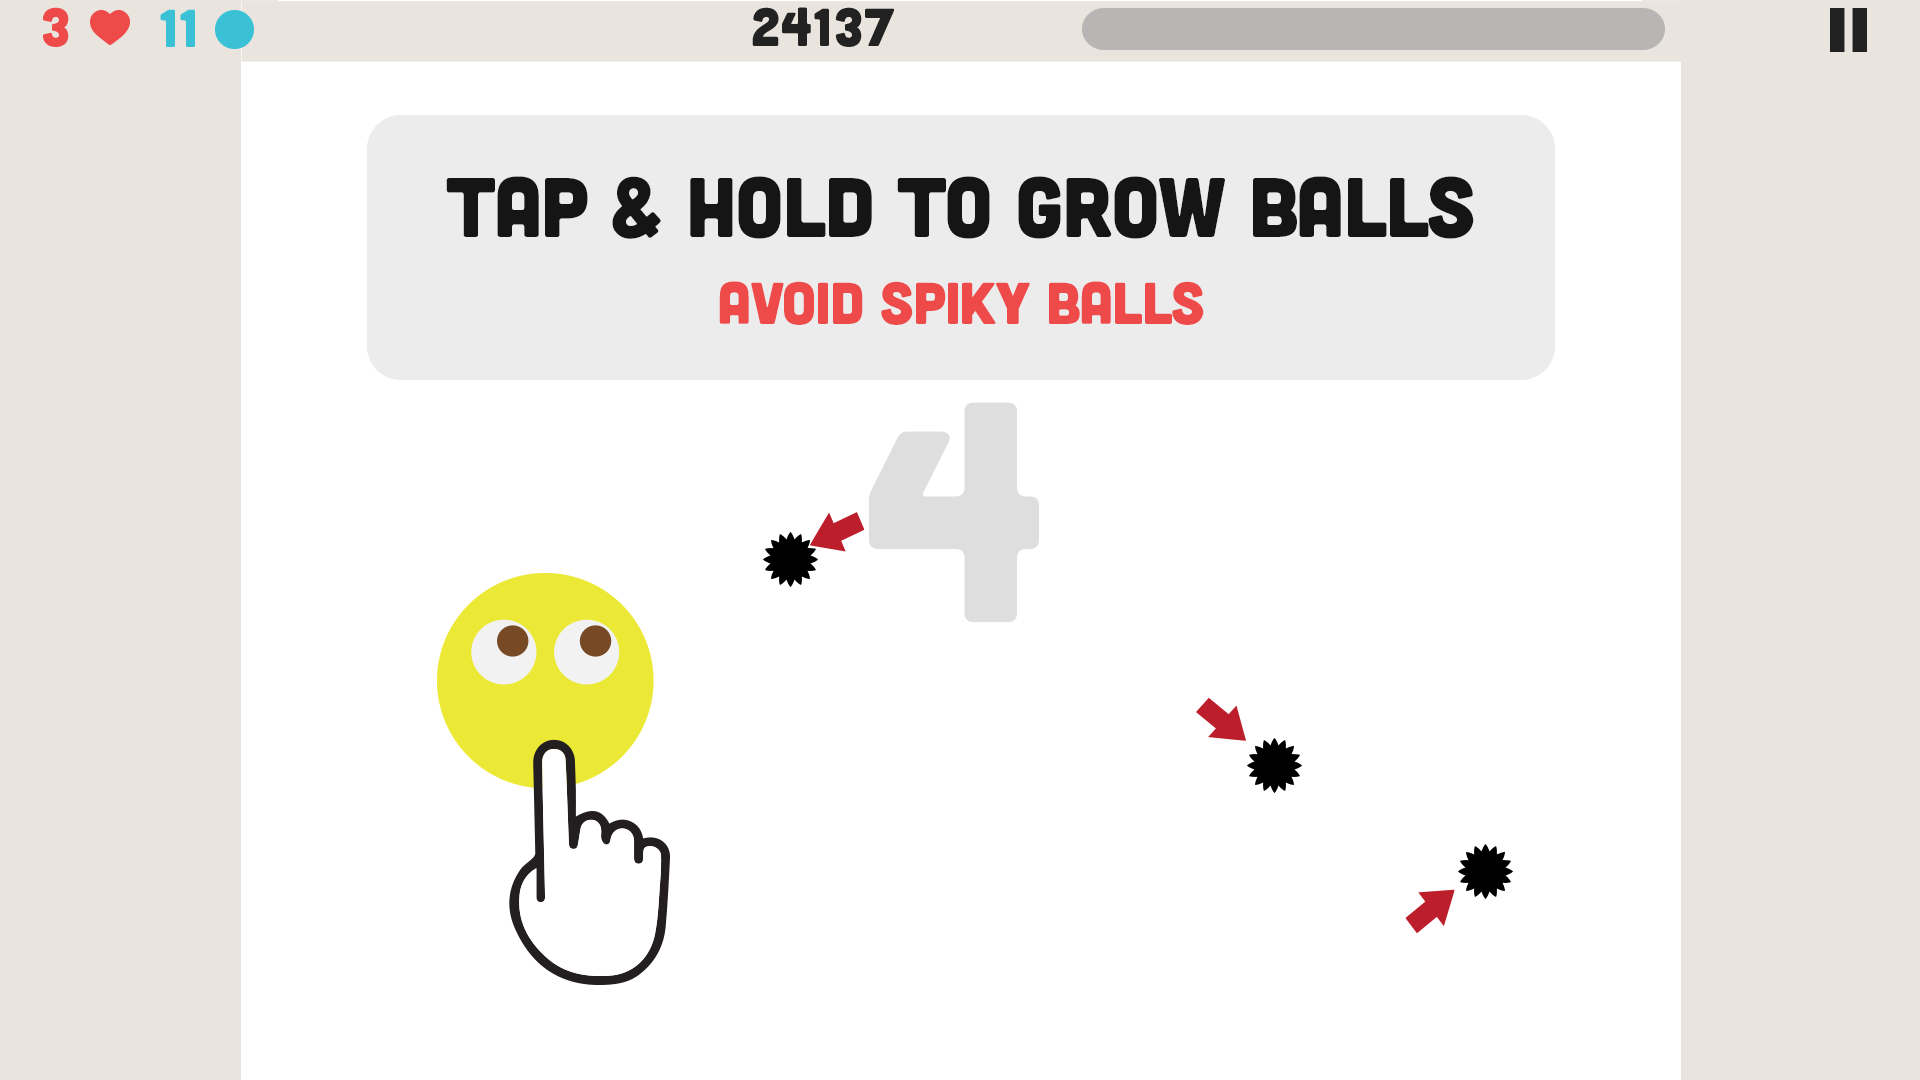 Some balls. Tap tap Ball. Some balls game. Grow some big balls bro. Reddit balls